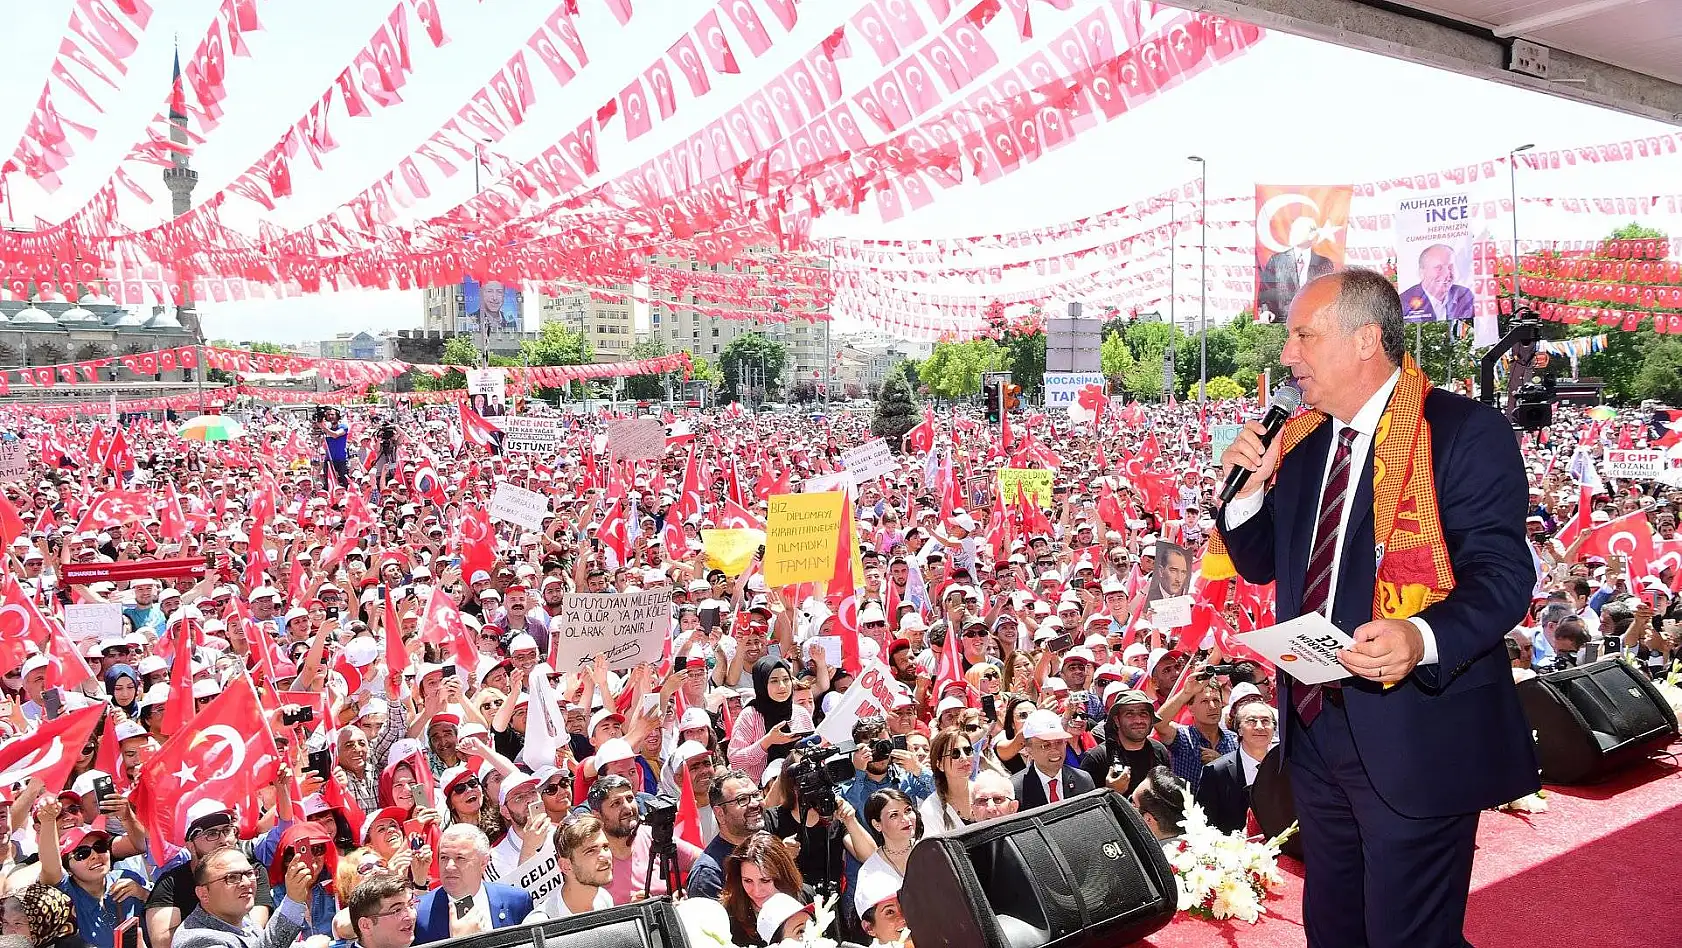 İnce: Erdoğan, ben sana bakamam çünkü devlet sana bakıyor, ben fakir fukaraya bakacağım